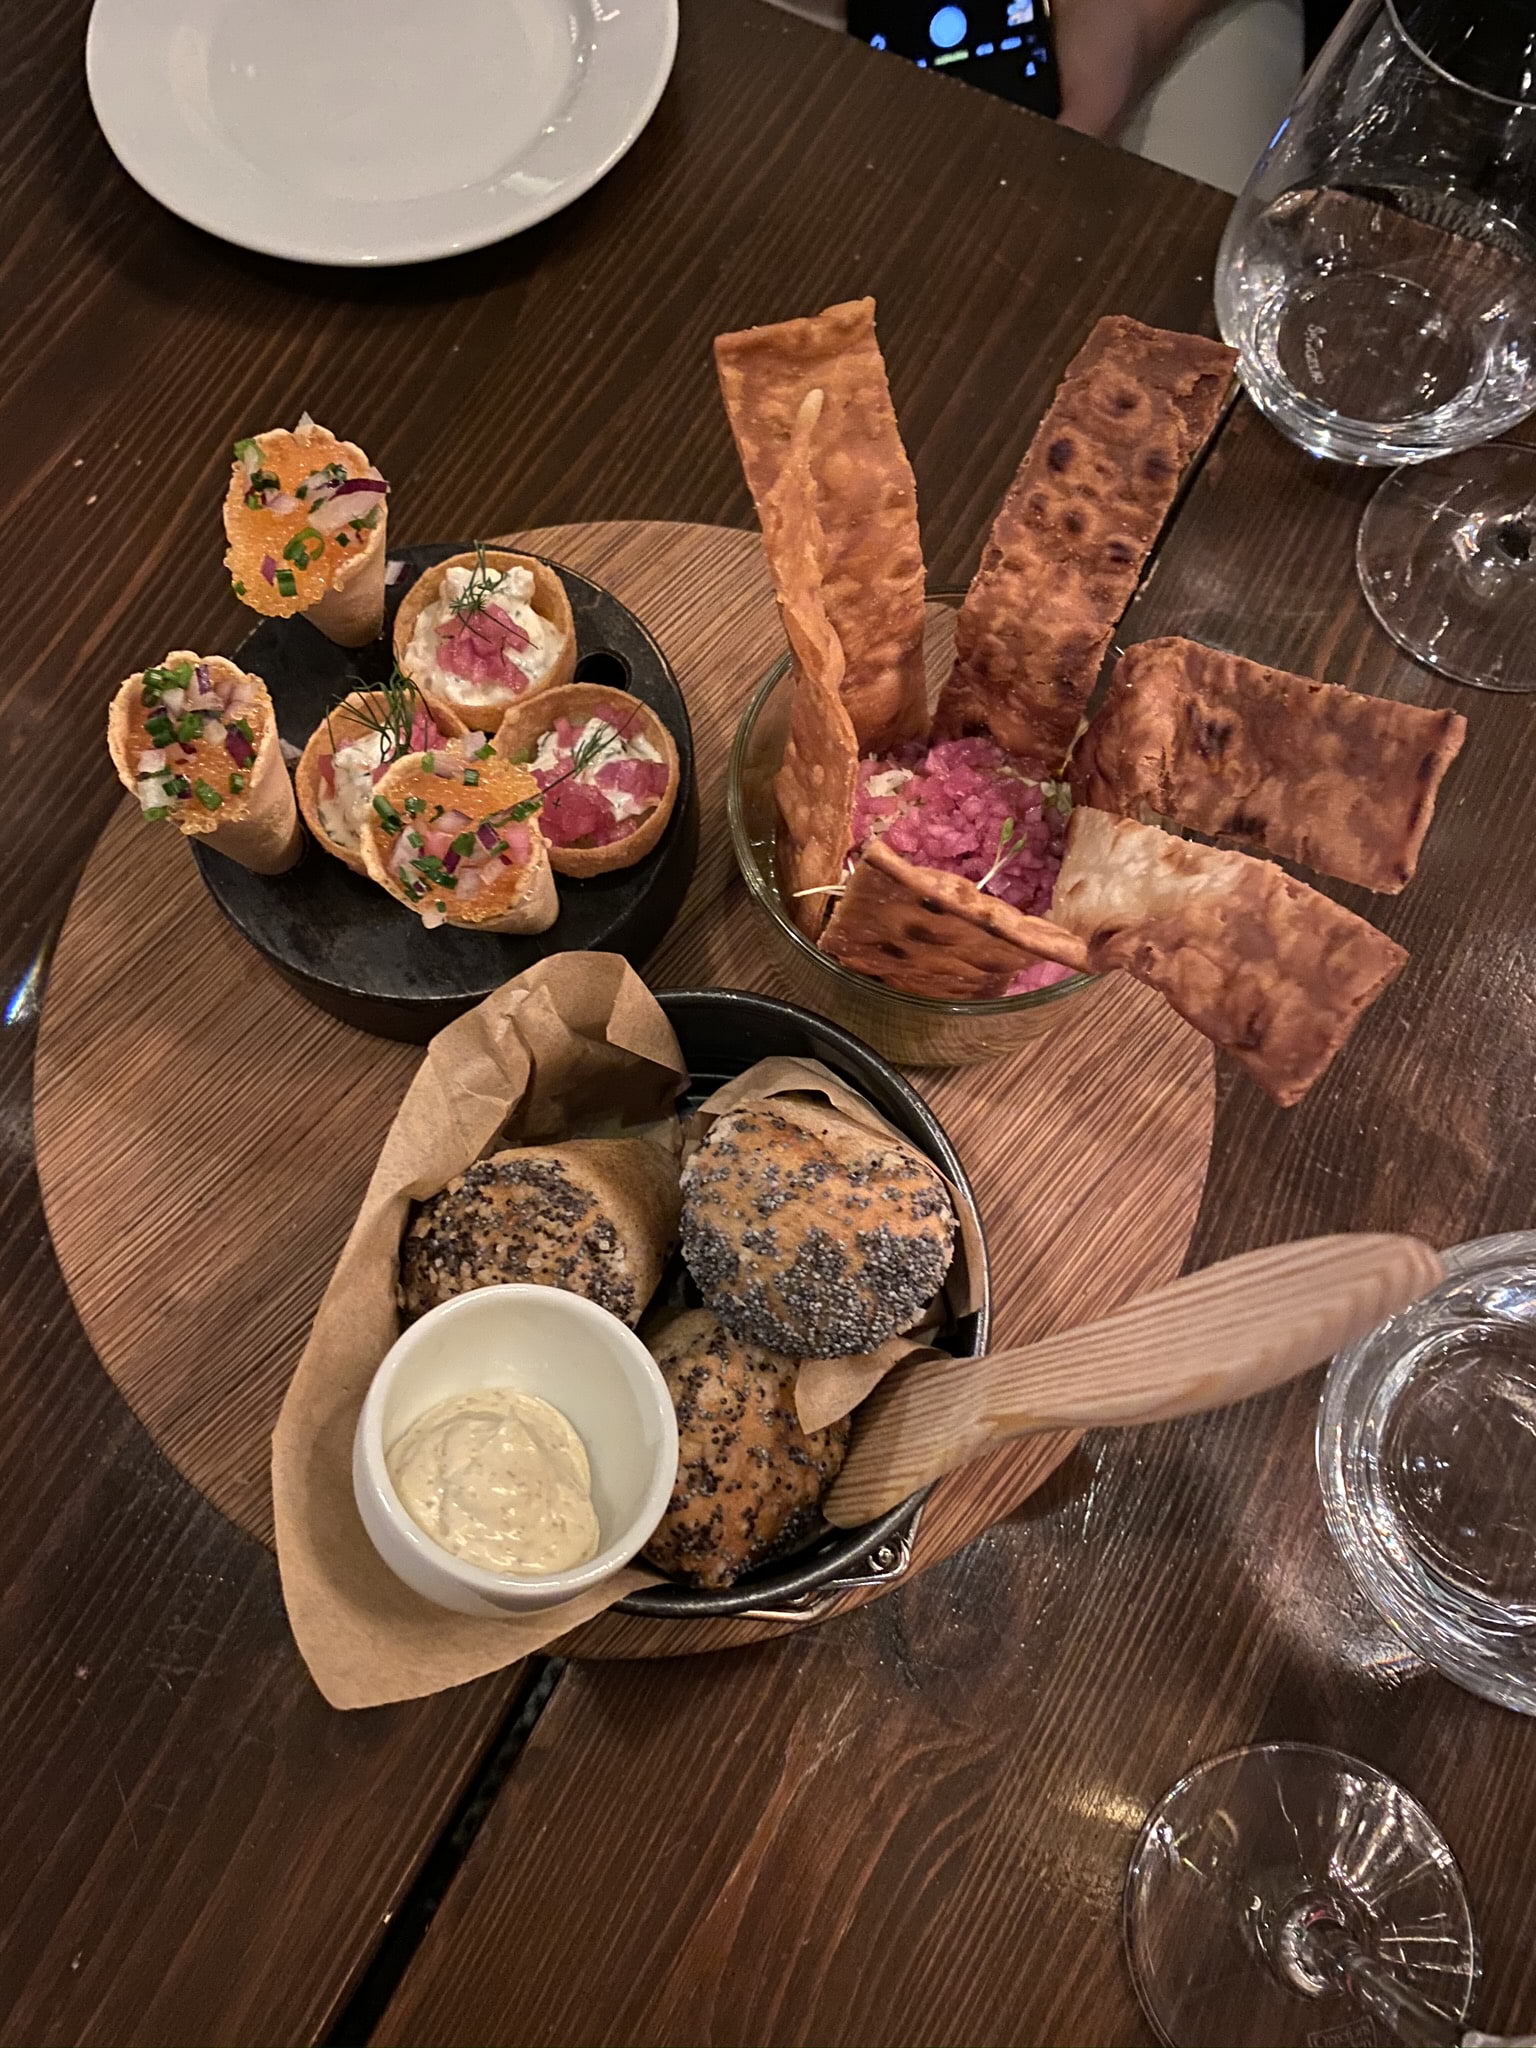 Löjromsstrut, hummus med pickladlök och bröd.  – Photo from Barrique Restaurant & Wine Bar by Erica E. (21/10/2020)